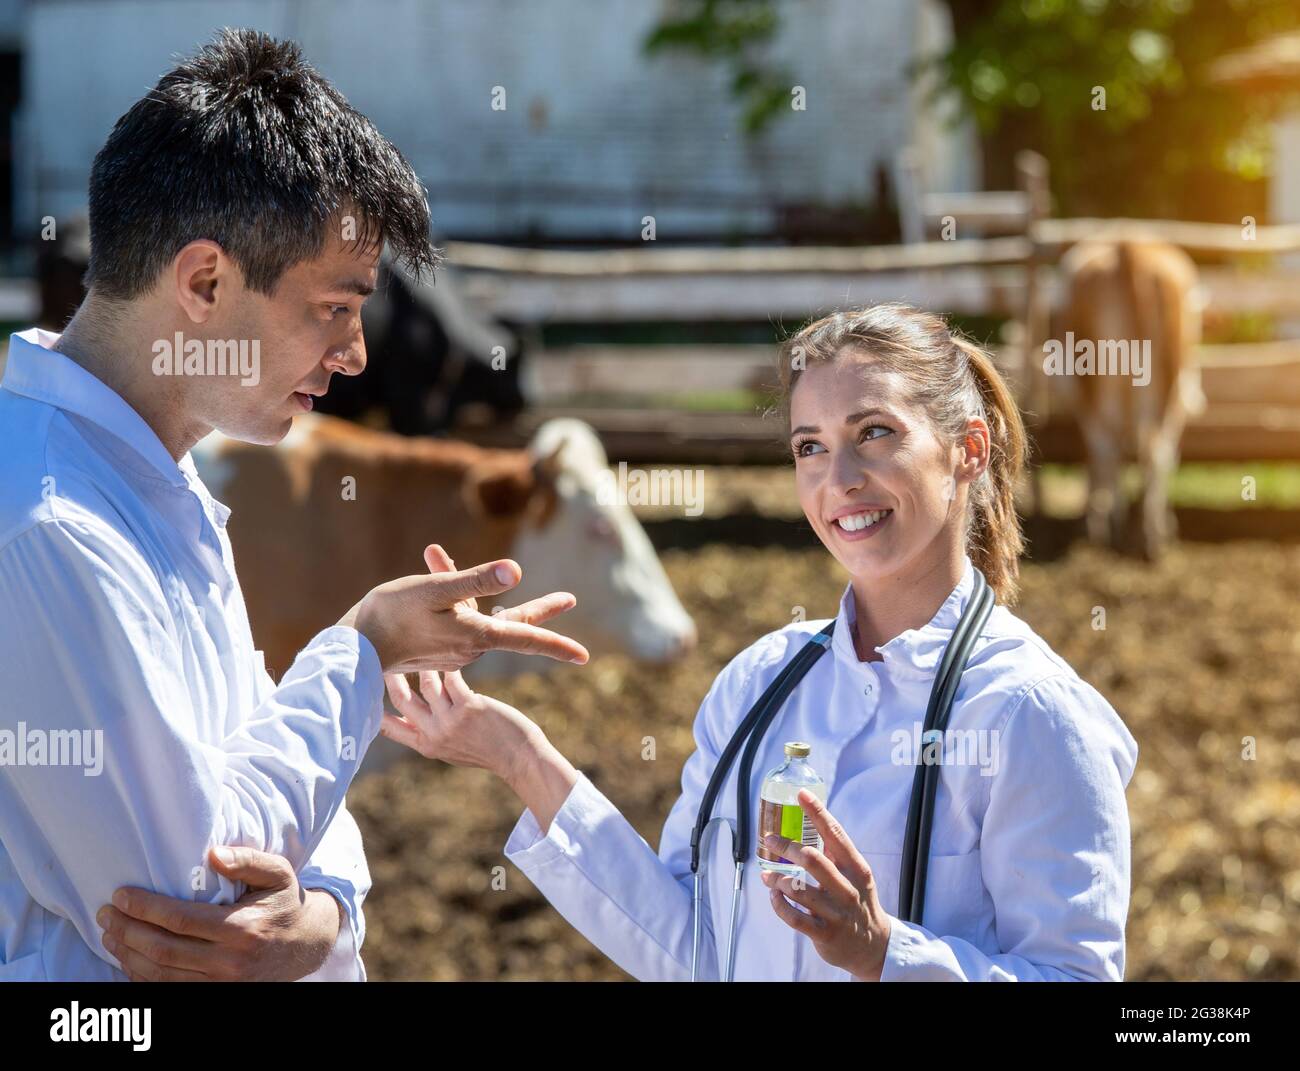 Mann und Frau sprechen über Medikamente Medizin in der Flasche. Tierärzte in weißen Mänteln auf der Ranch lächelnd über die Behandlung sprechen. Stockfoto